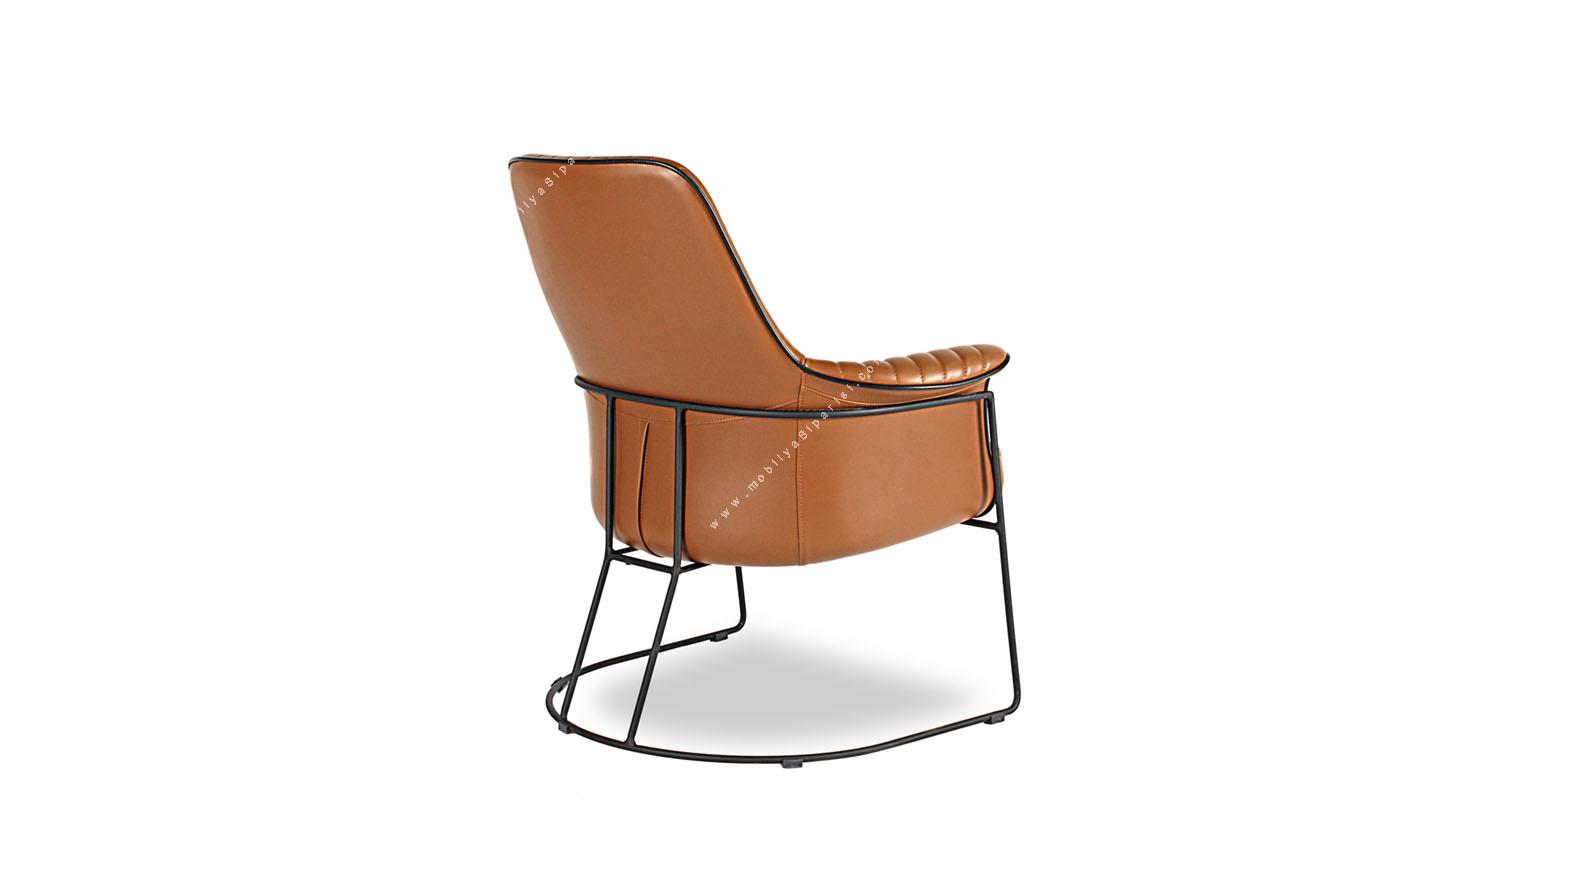 graner metal boyalı tasarım tel ayak misafir koltuğu